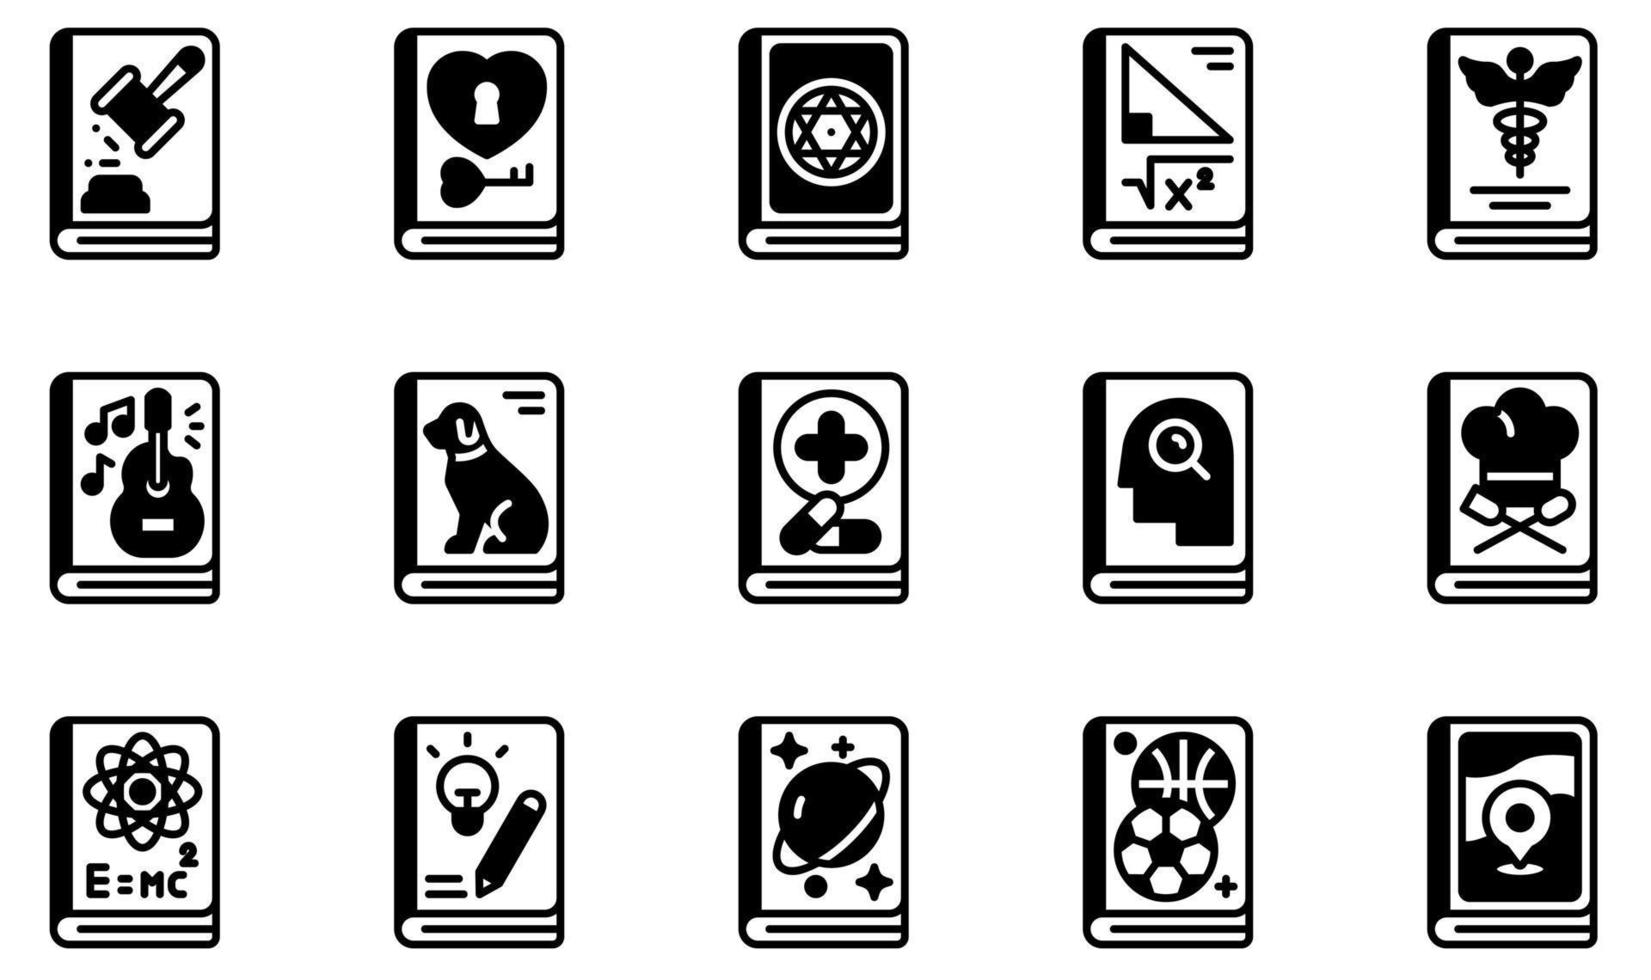 uppsättning vektor ikoner relaterade till böcker. innehåller sådana ikoner som lagbok, kärleksbok, magisk bok, mattebok, notbok, resebok och mer.